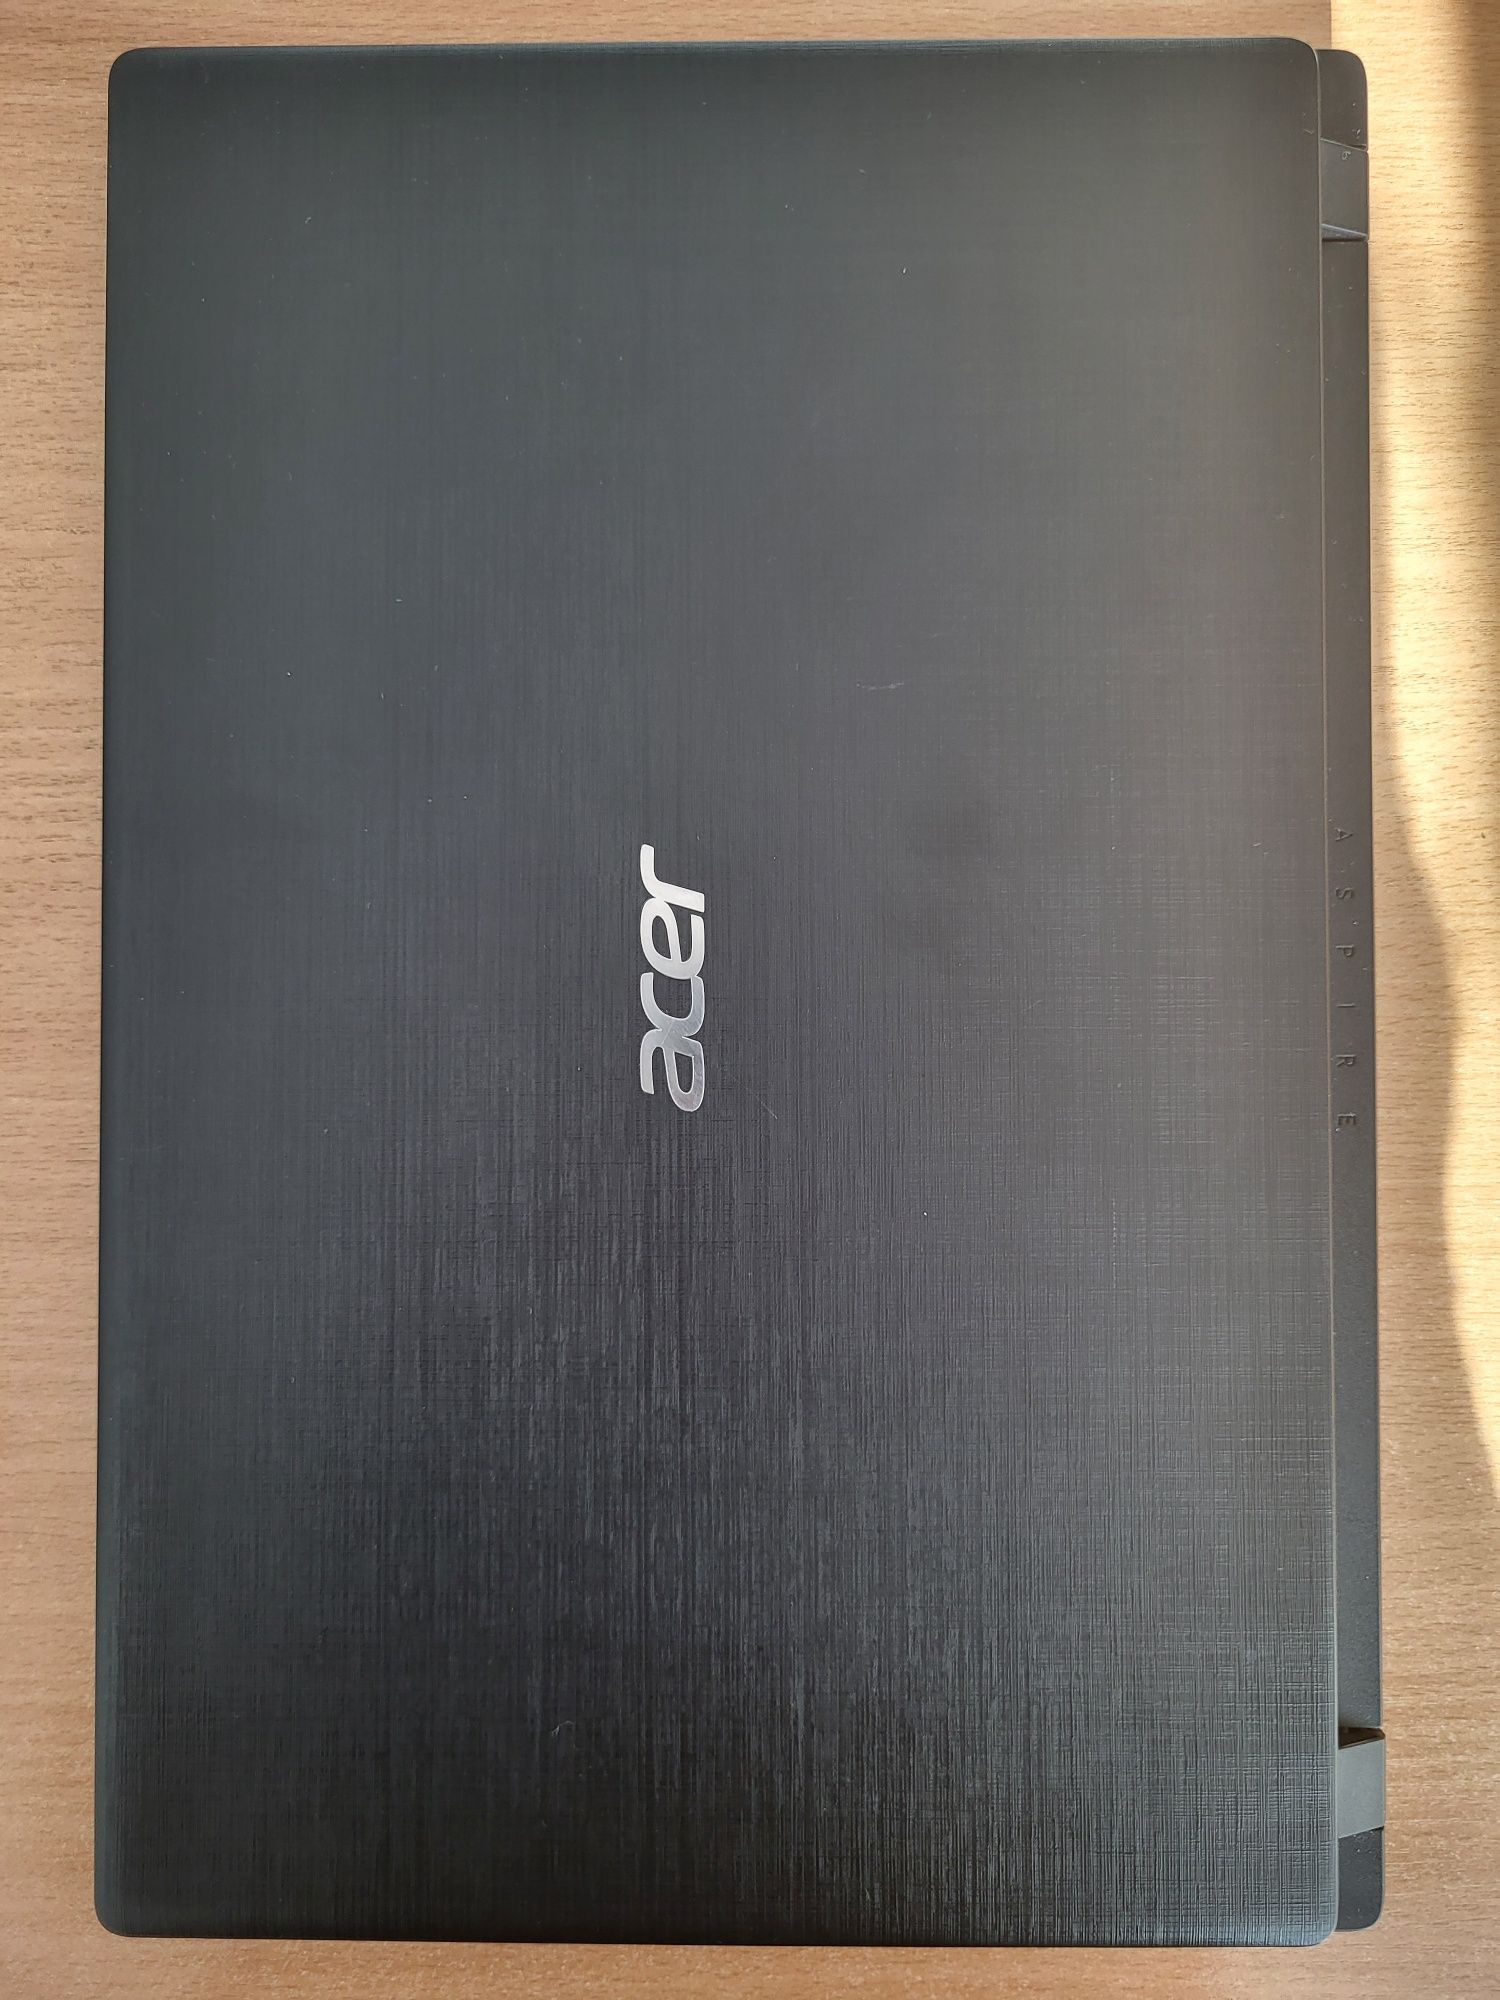 Продам ноутбук Aser хорошошиее состояние, с документом. 70.000тг.